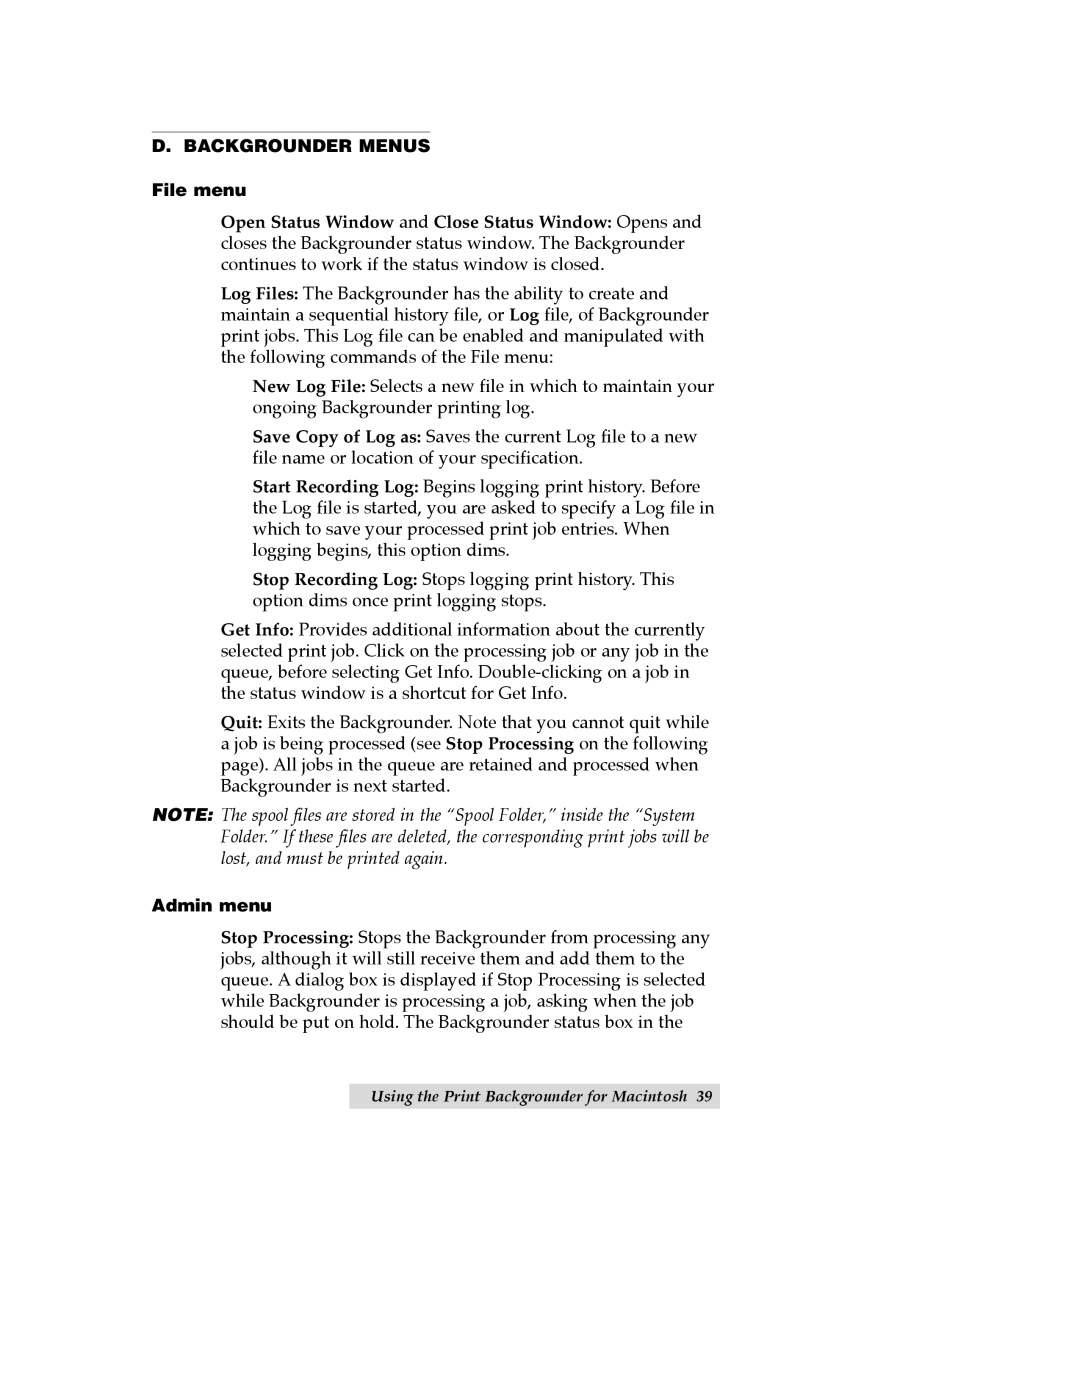 Primera Technology CD Color Printer II manual D. BACKGROUNDER MENUS File menu, Admin menu 